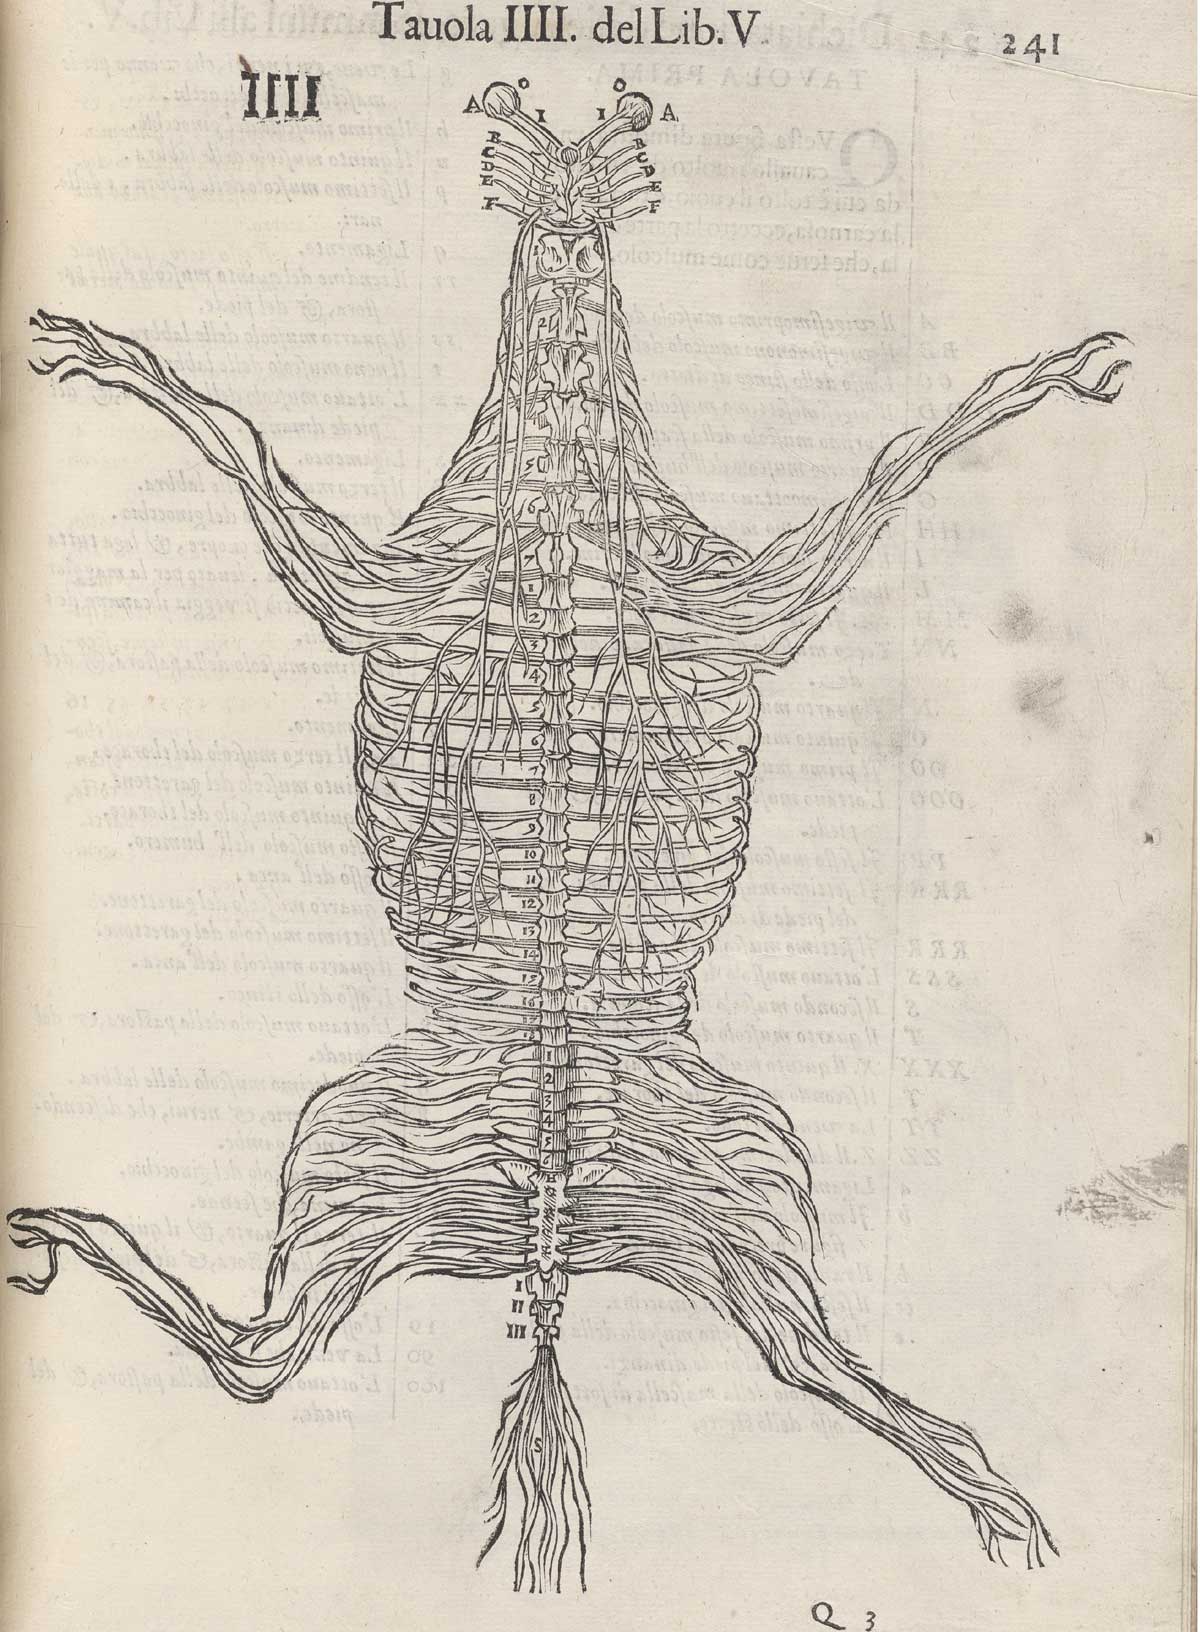 Page 241 of Ruini's Anatomia del cavallo, infermità, et suoi rimedii, featuring the full-length view of a horse's vascular system.